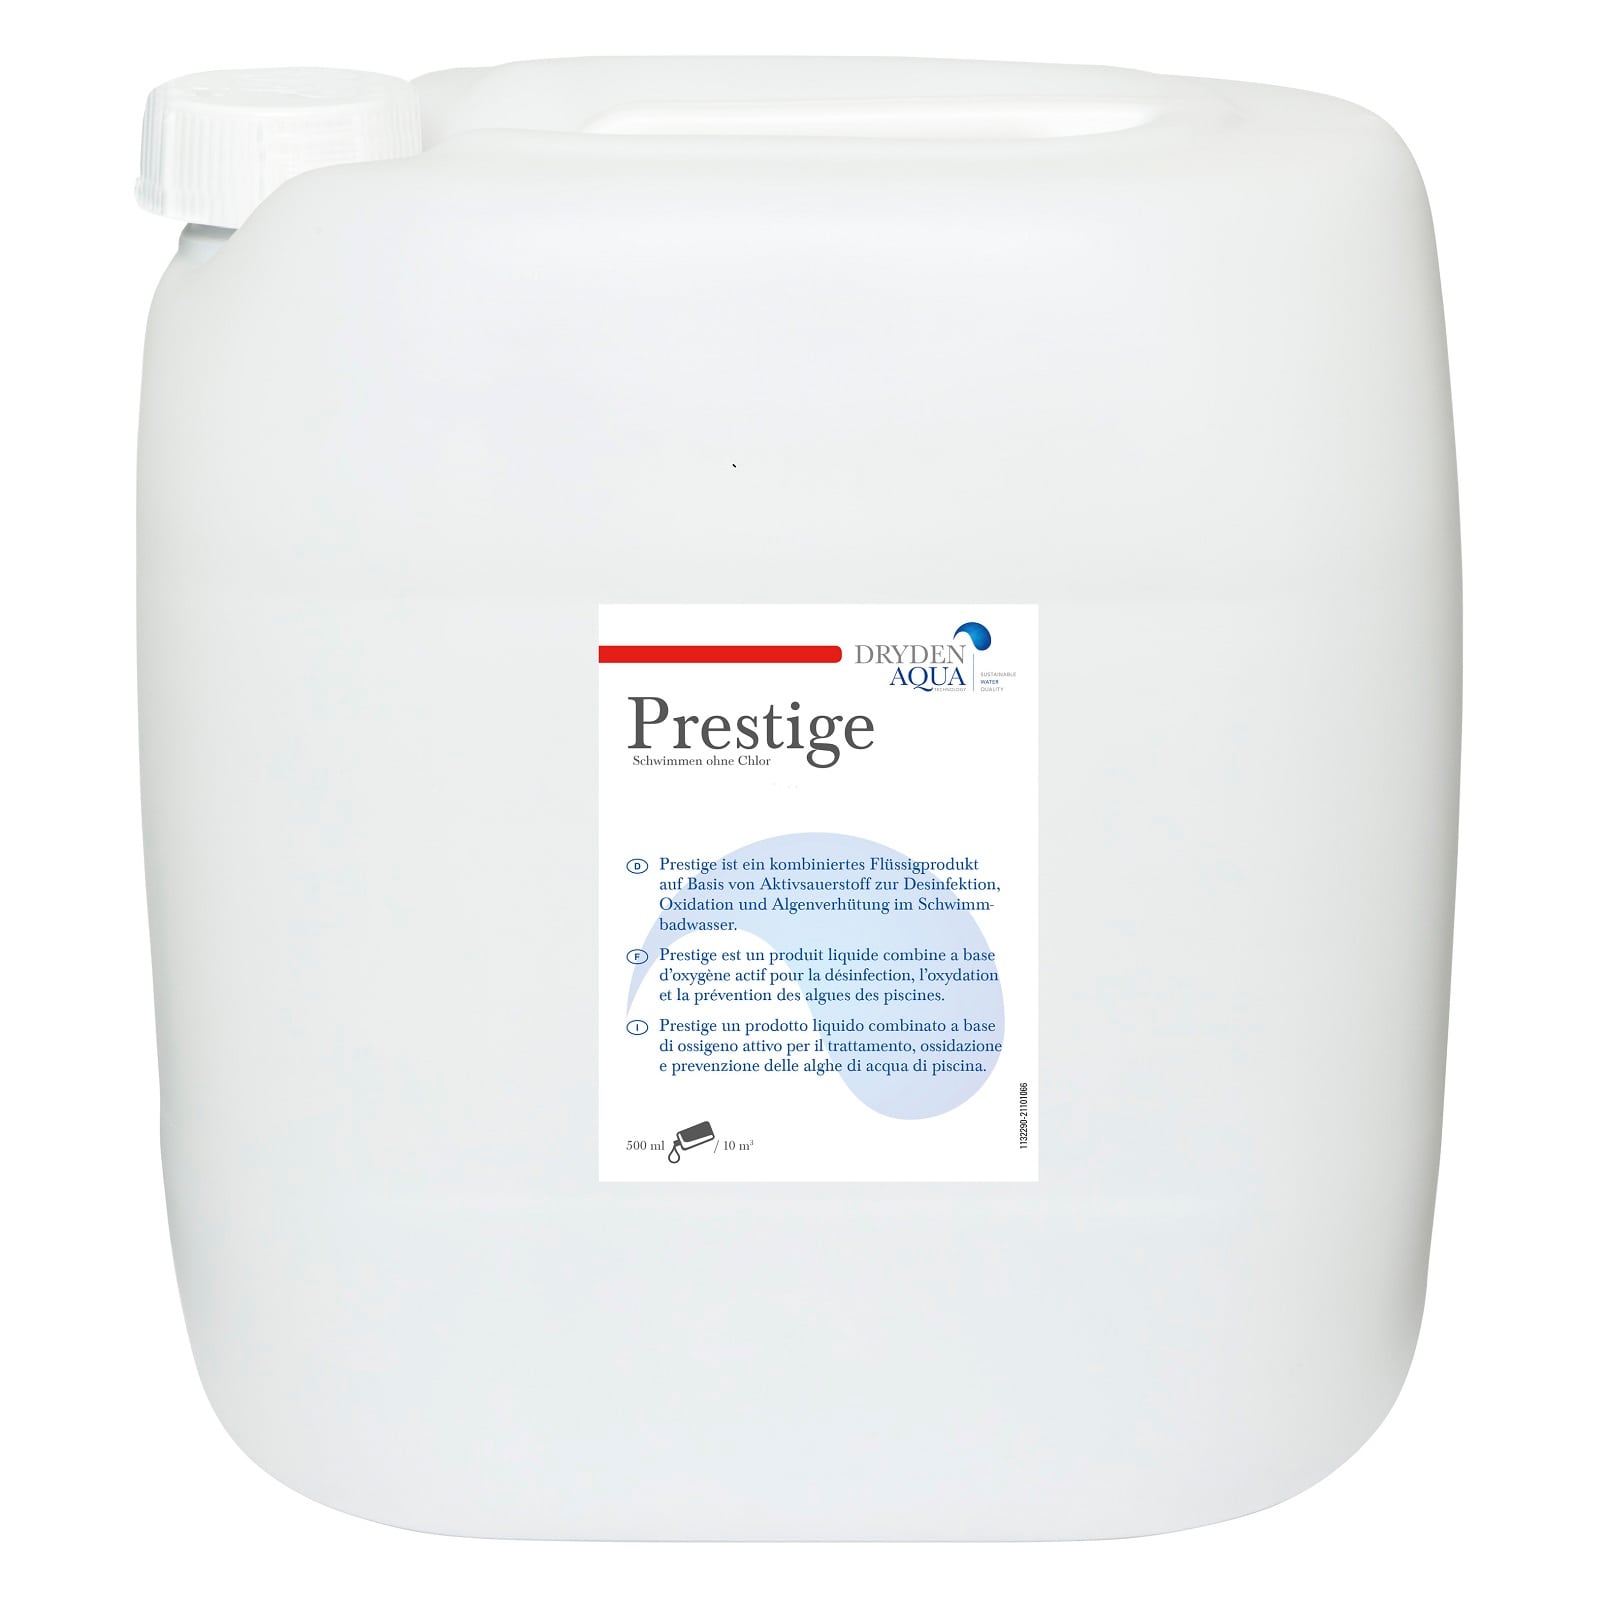 Prestige, Dryden Aqua